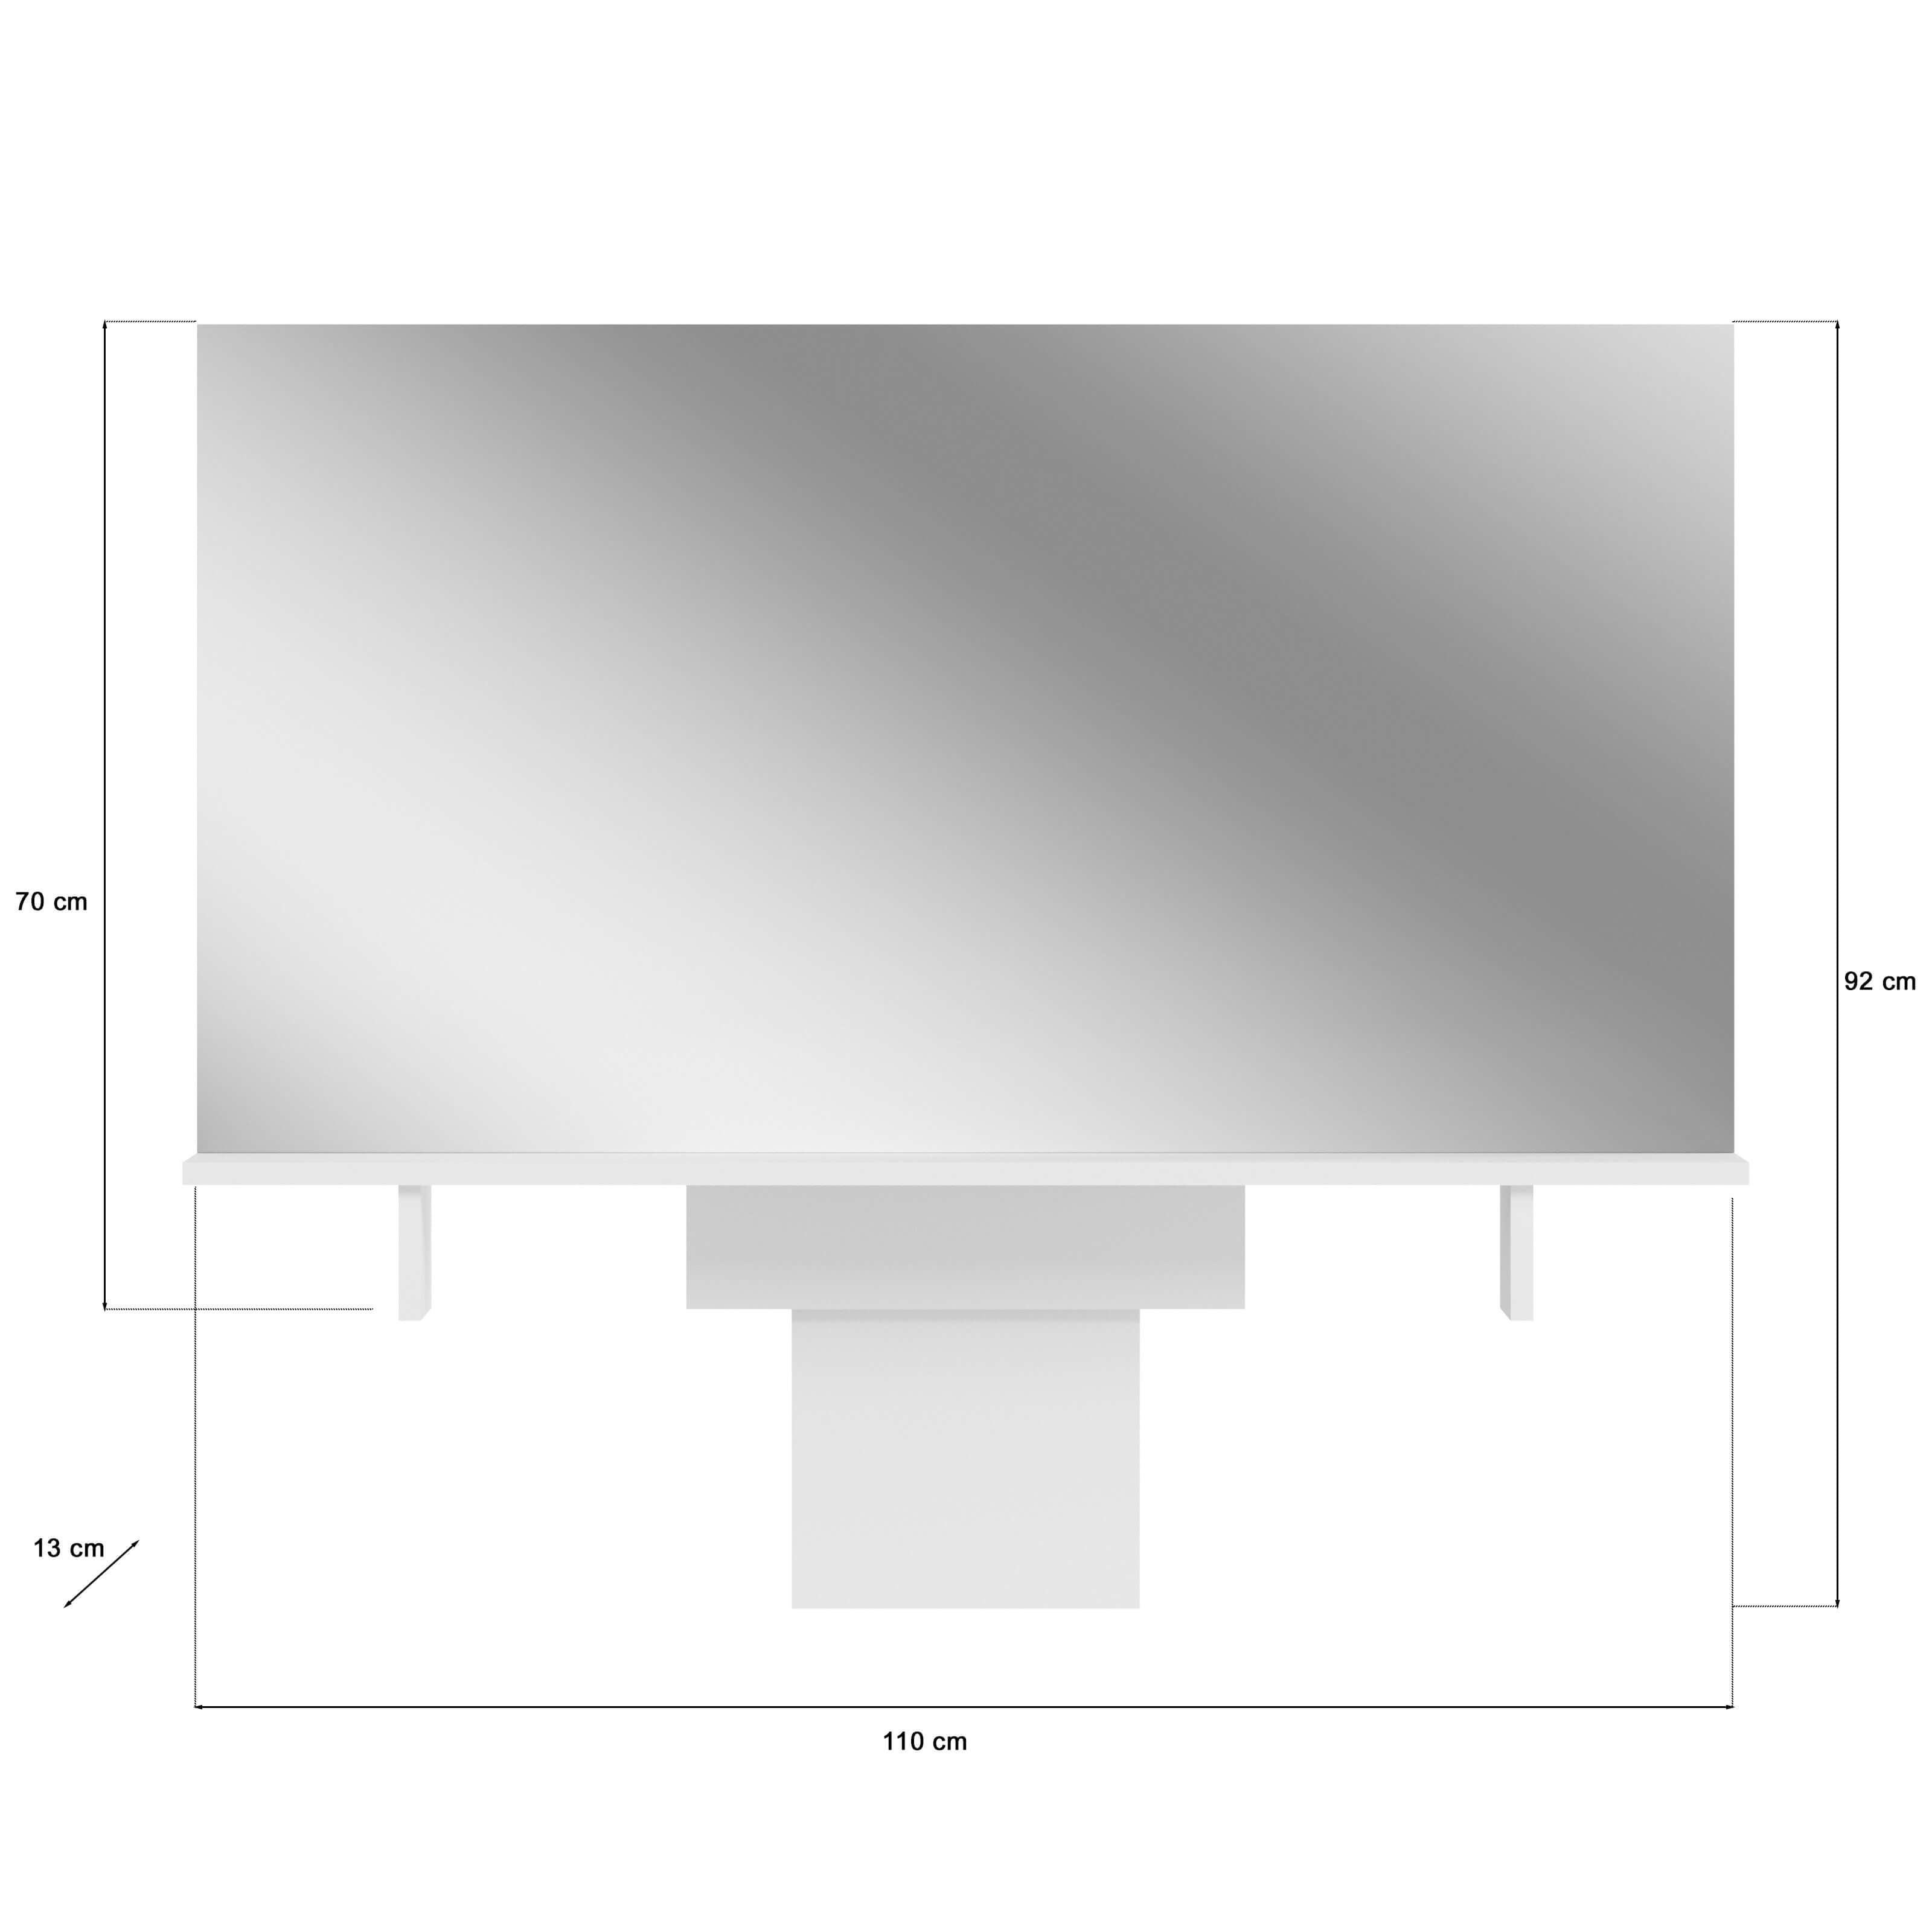 Aufsatzspiegel I Modell TK3 I Design: gradliniges Desgin, mit praktischem Ablageboden und offenen Fächern